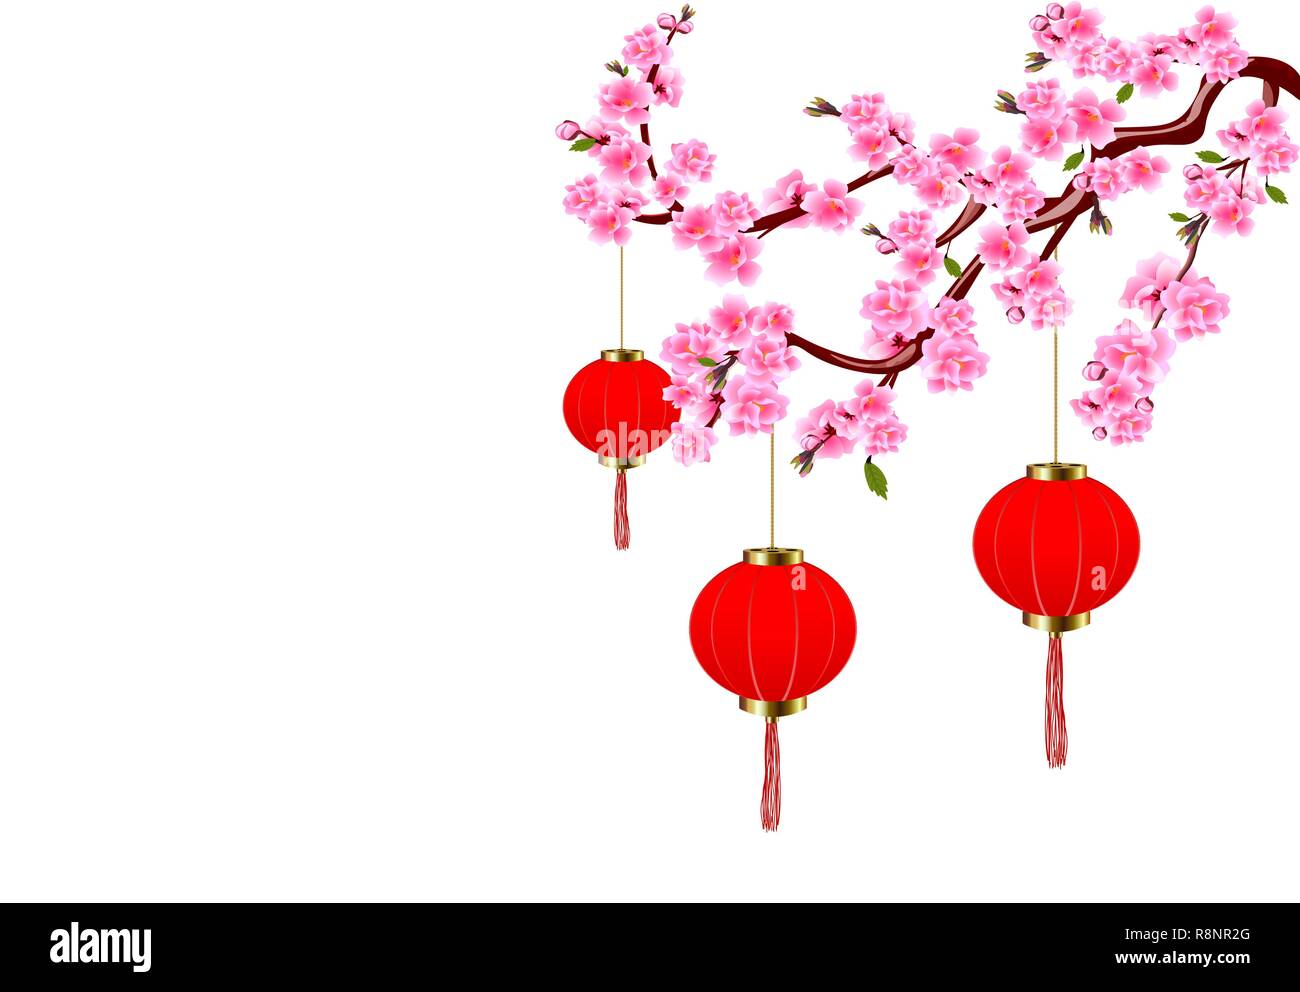 Das chinesische Neujahr. Sakura und roten Ampeln. Cherry Blumen mit Knospen und Blätter am Zweig. Abbildung Stock Vektor